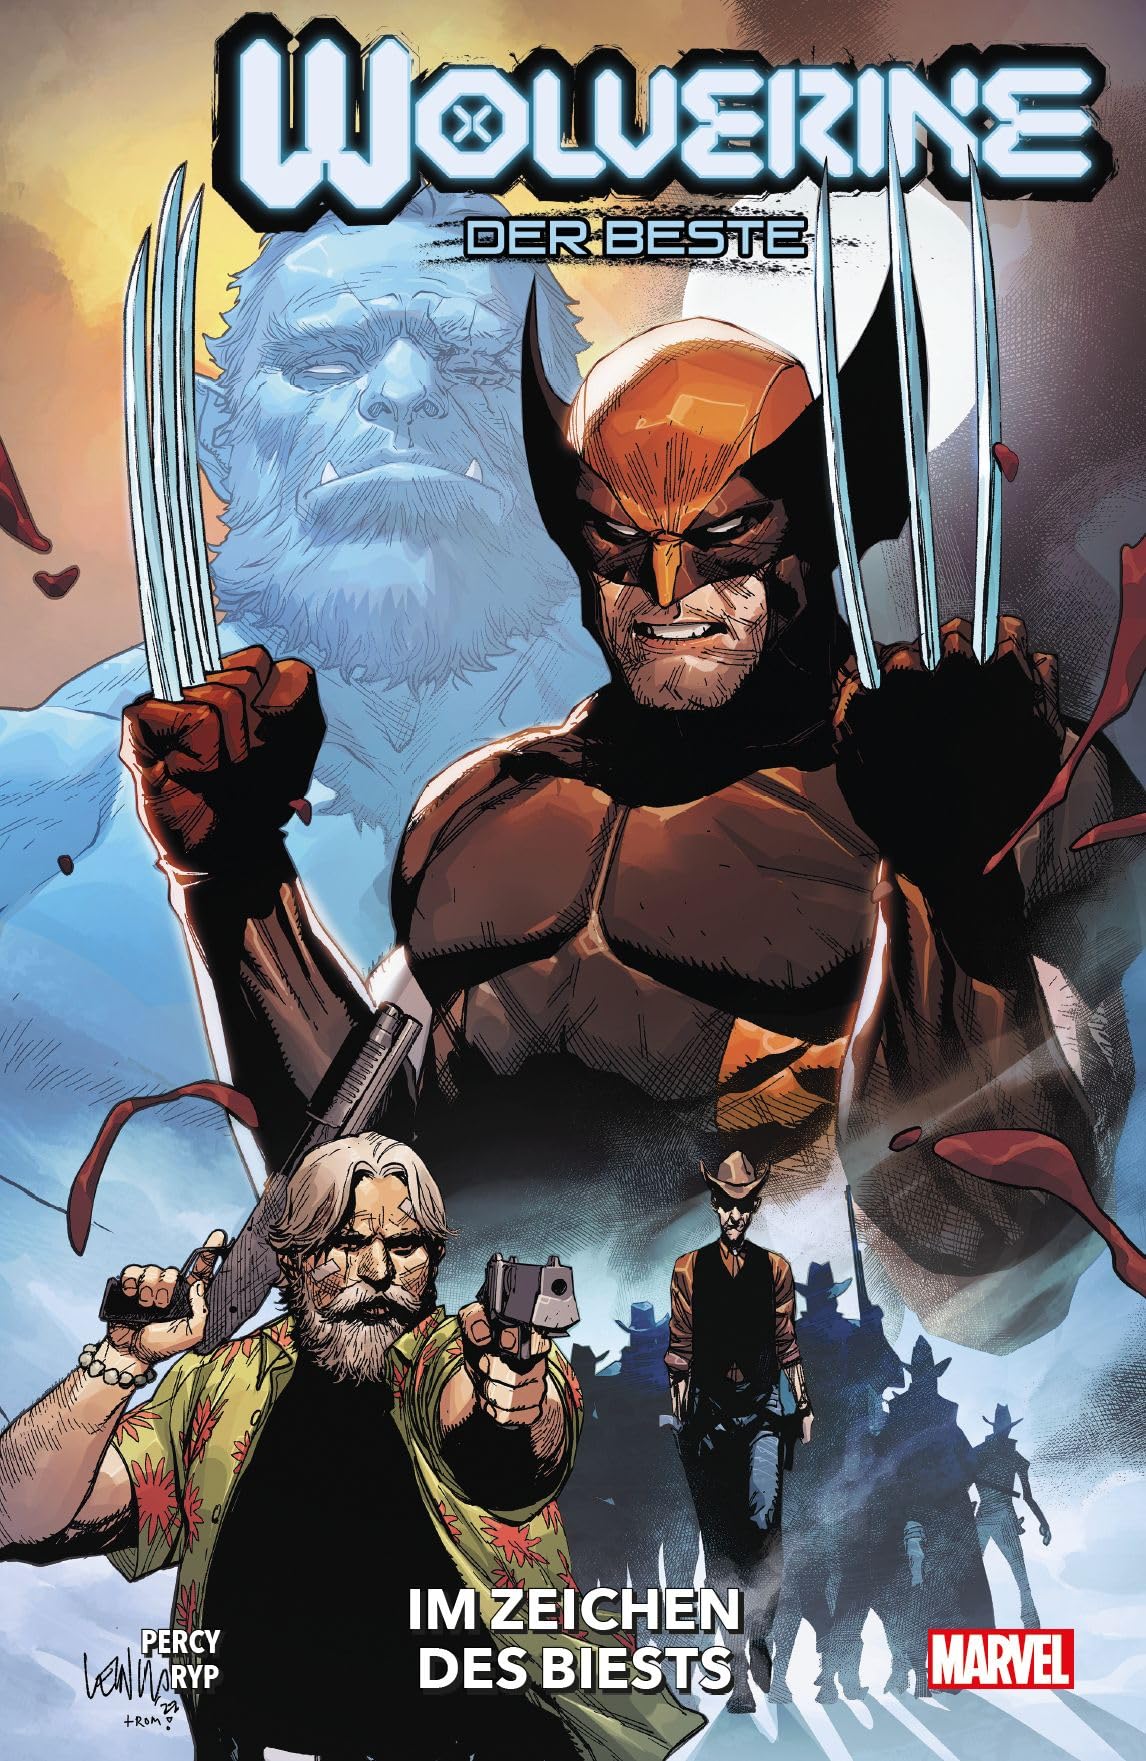 Wolverine: Der Beste Im Zeichen des Biests